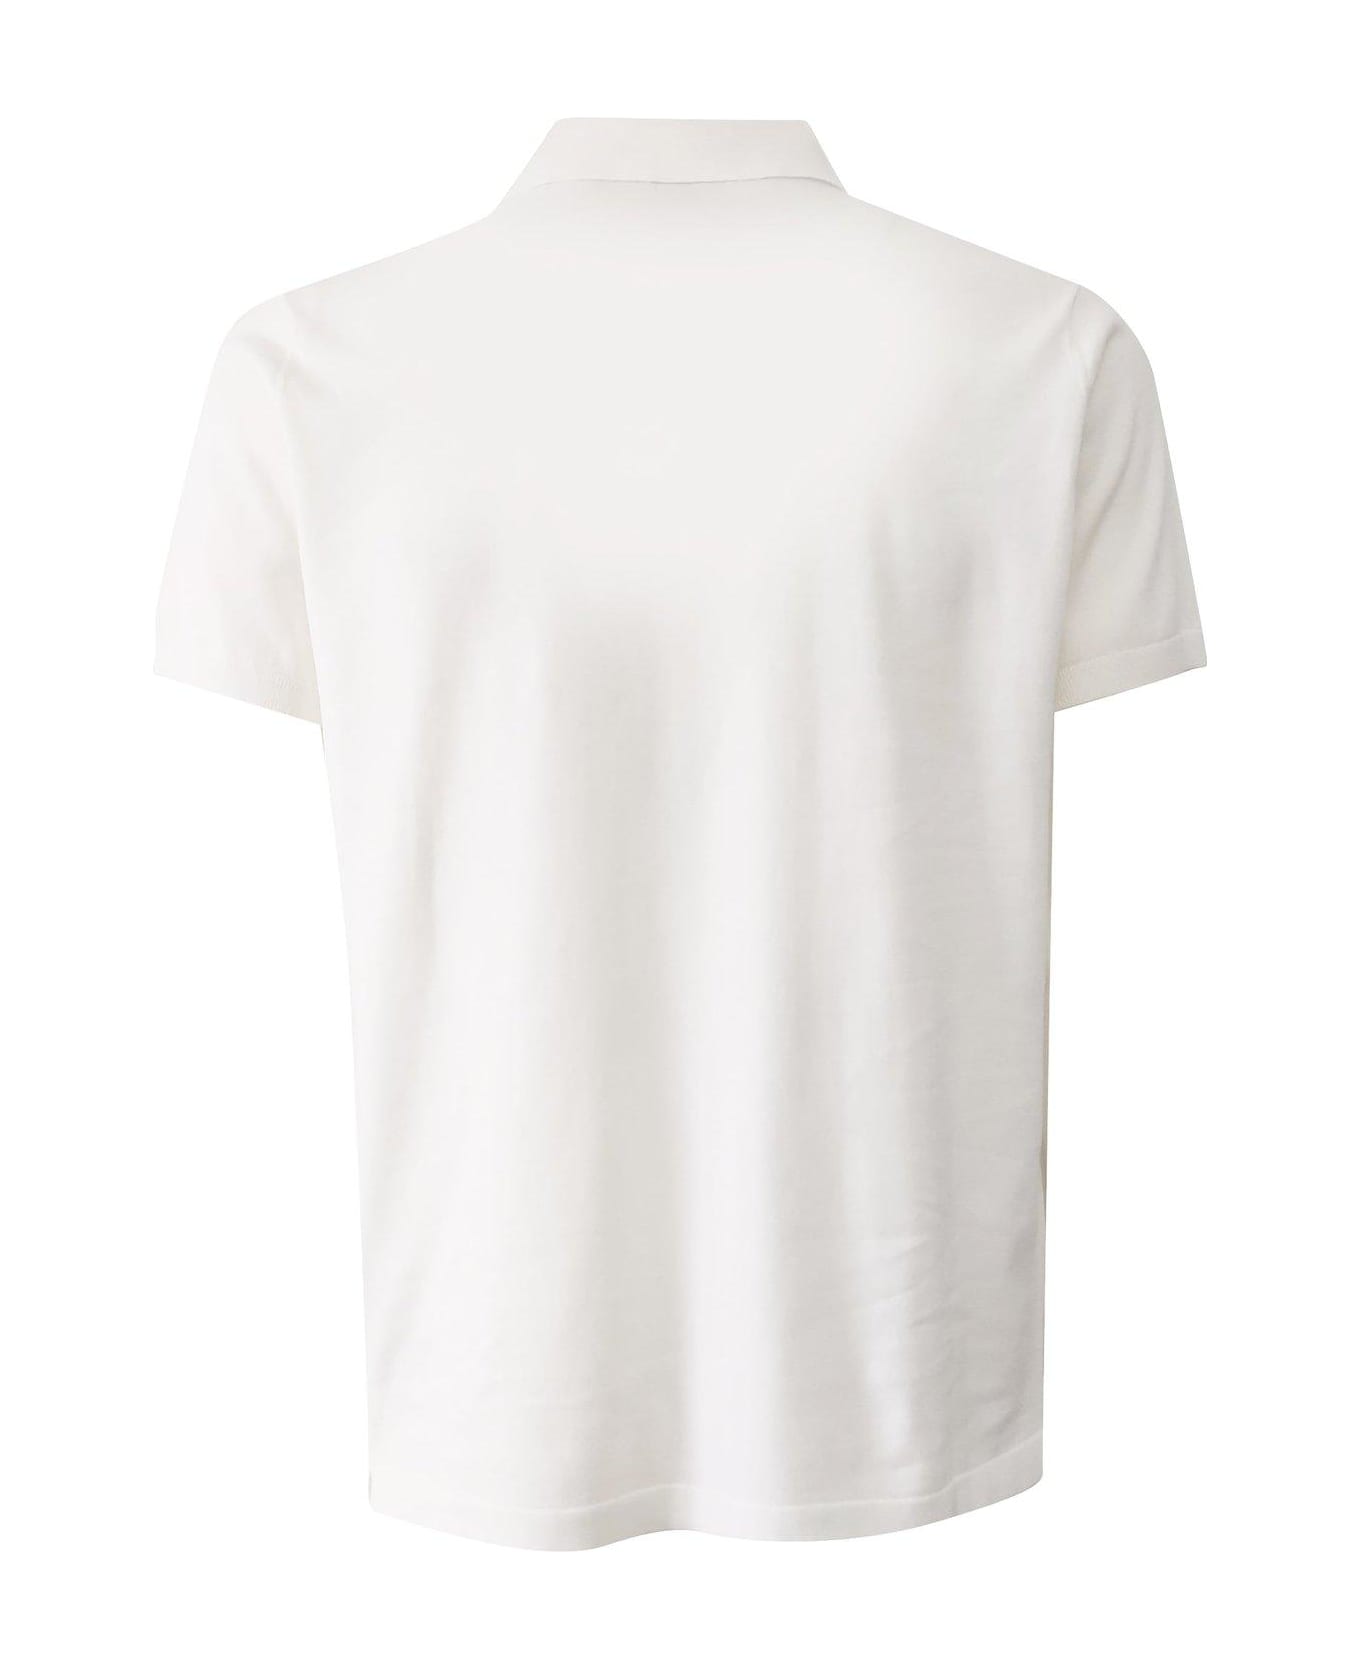 Aspesi Buttoned Short-sleeved Polo Shirt - White